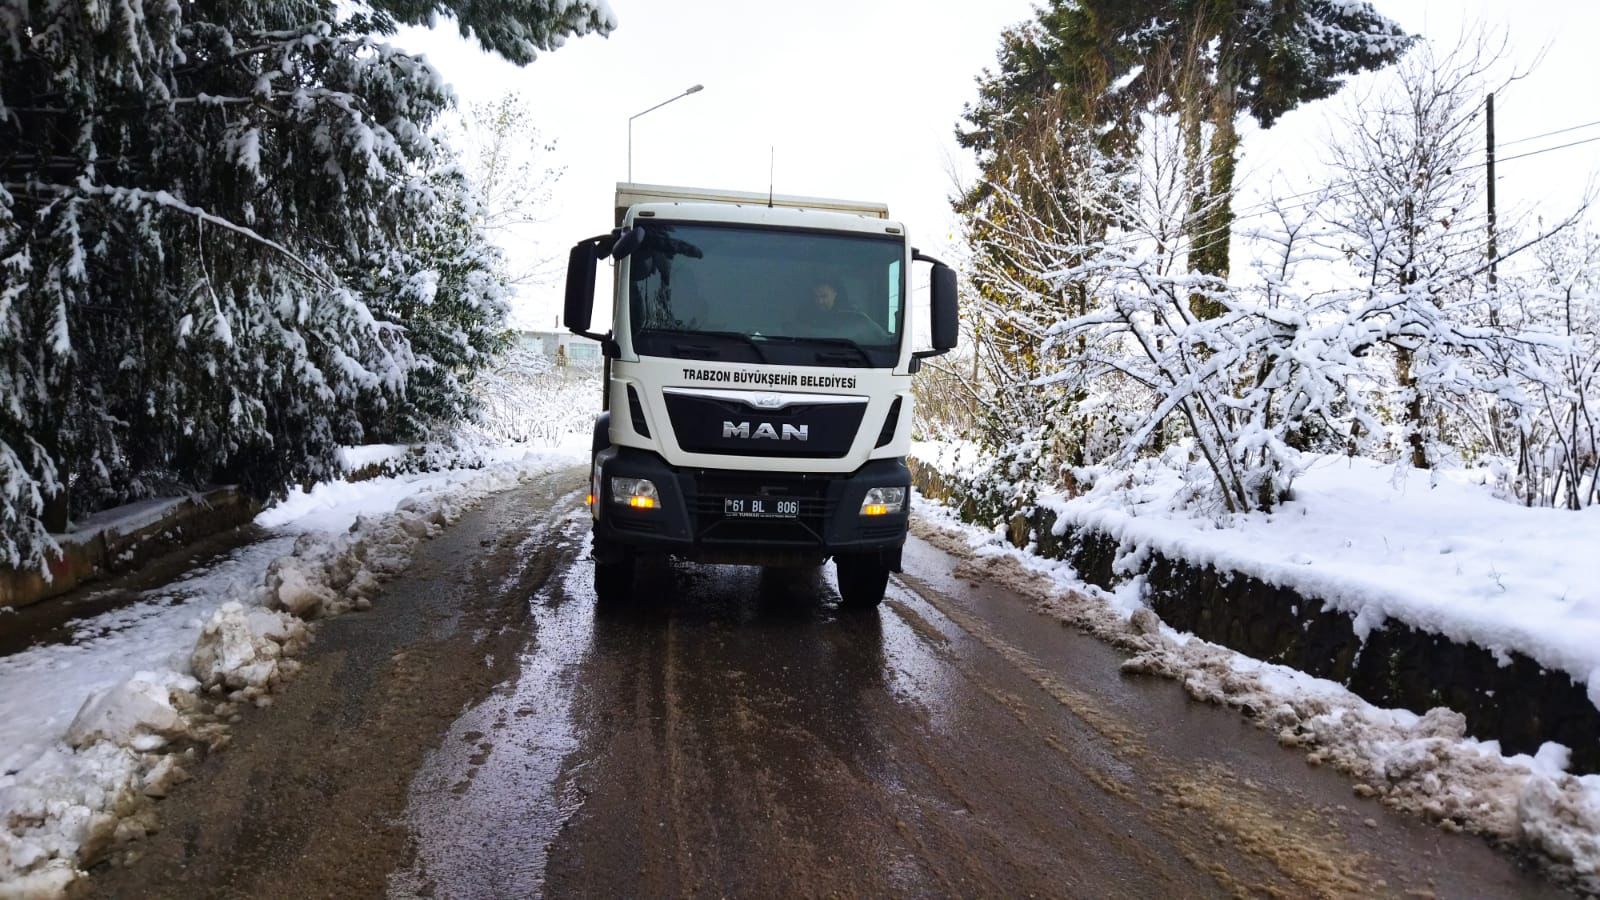 Trabzon’da dün akşam saatlerinde aniden etkili olan kar yağışı, hayatı olumsuz etkiledi. Trabzon Büyükşehir Belediyesi yolda kalan hemşehrileri için tüm imkanlarını seferber etti. Otobüs ve özel servis araçları ile 15 bine yakın vatandaşı evlerine ulaştırdı. 